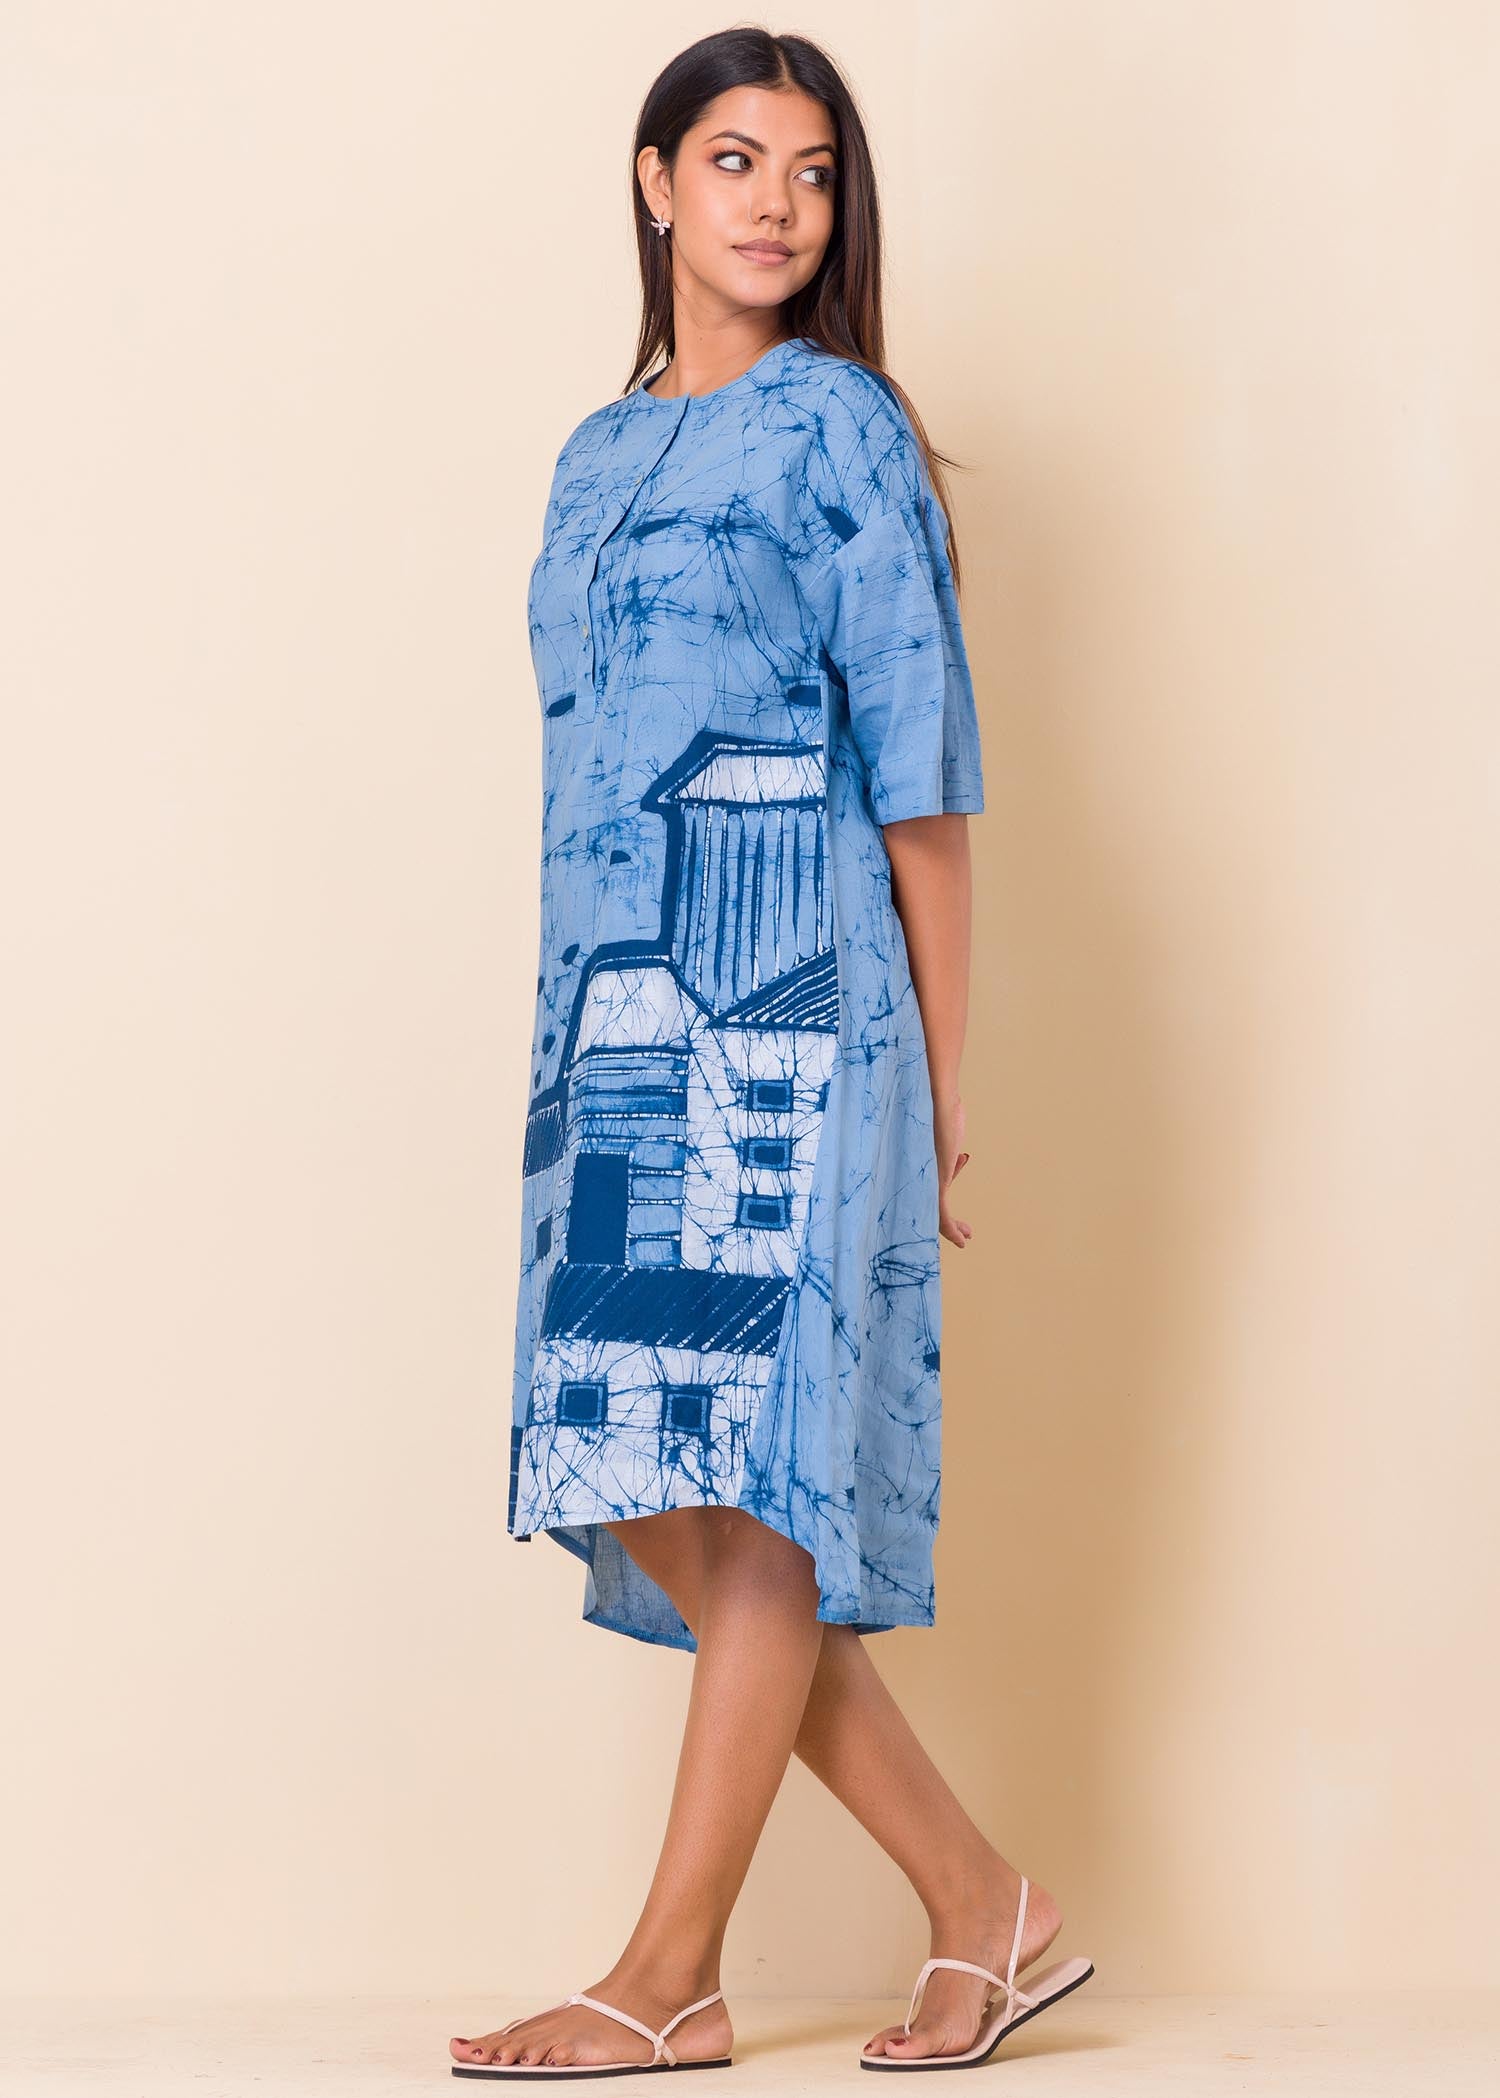 Building Inspired Batik Dress